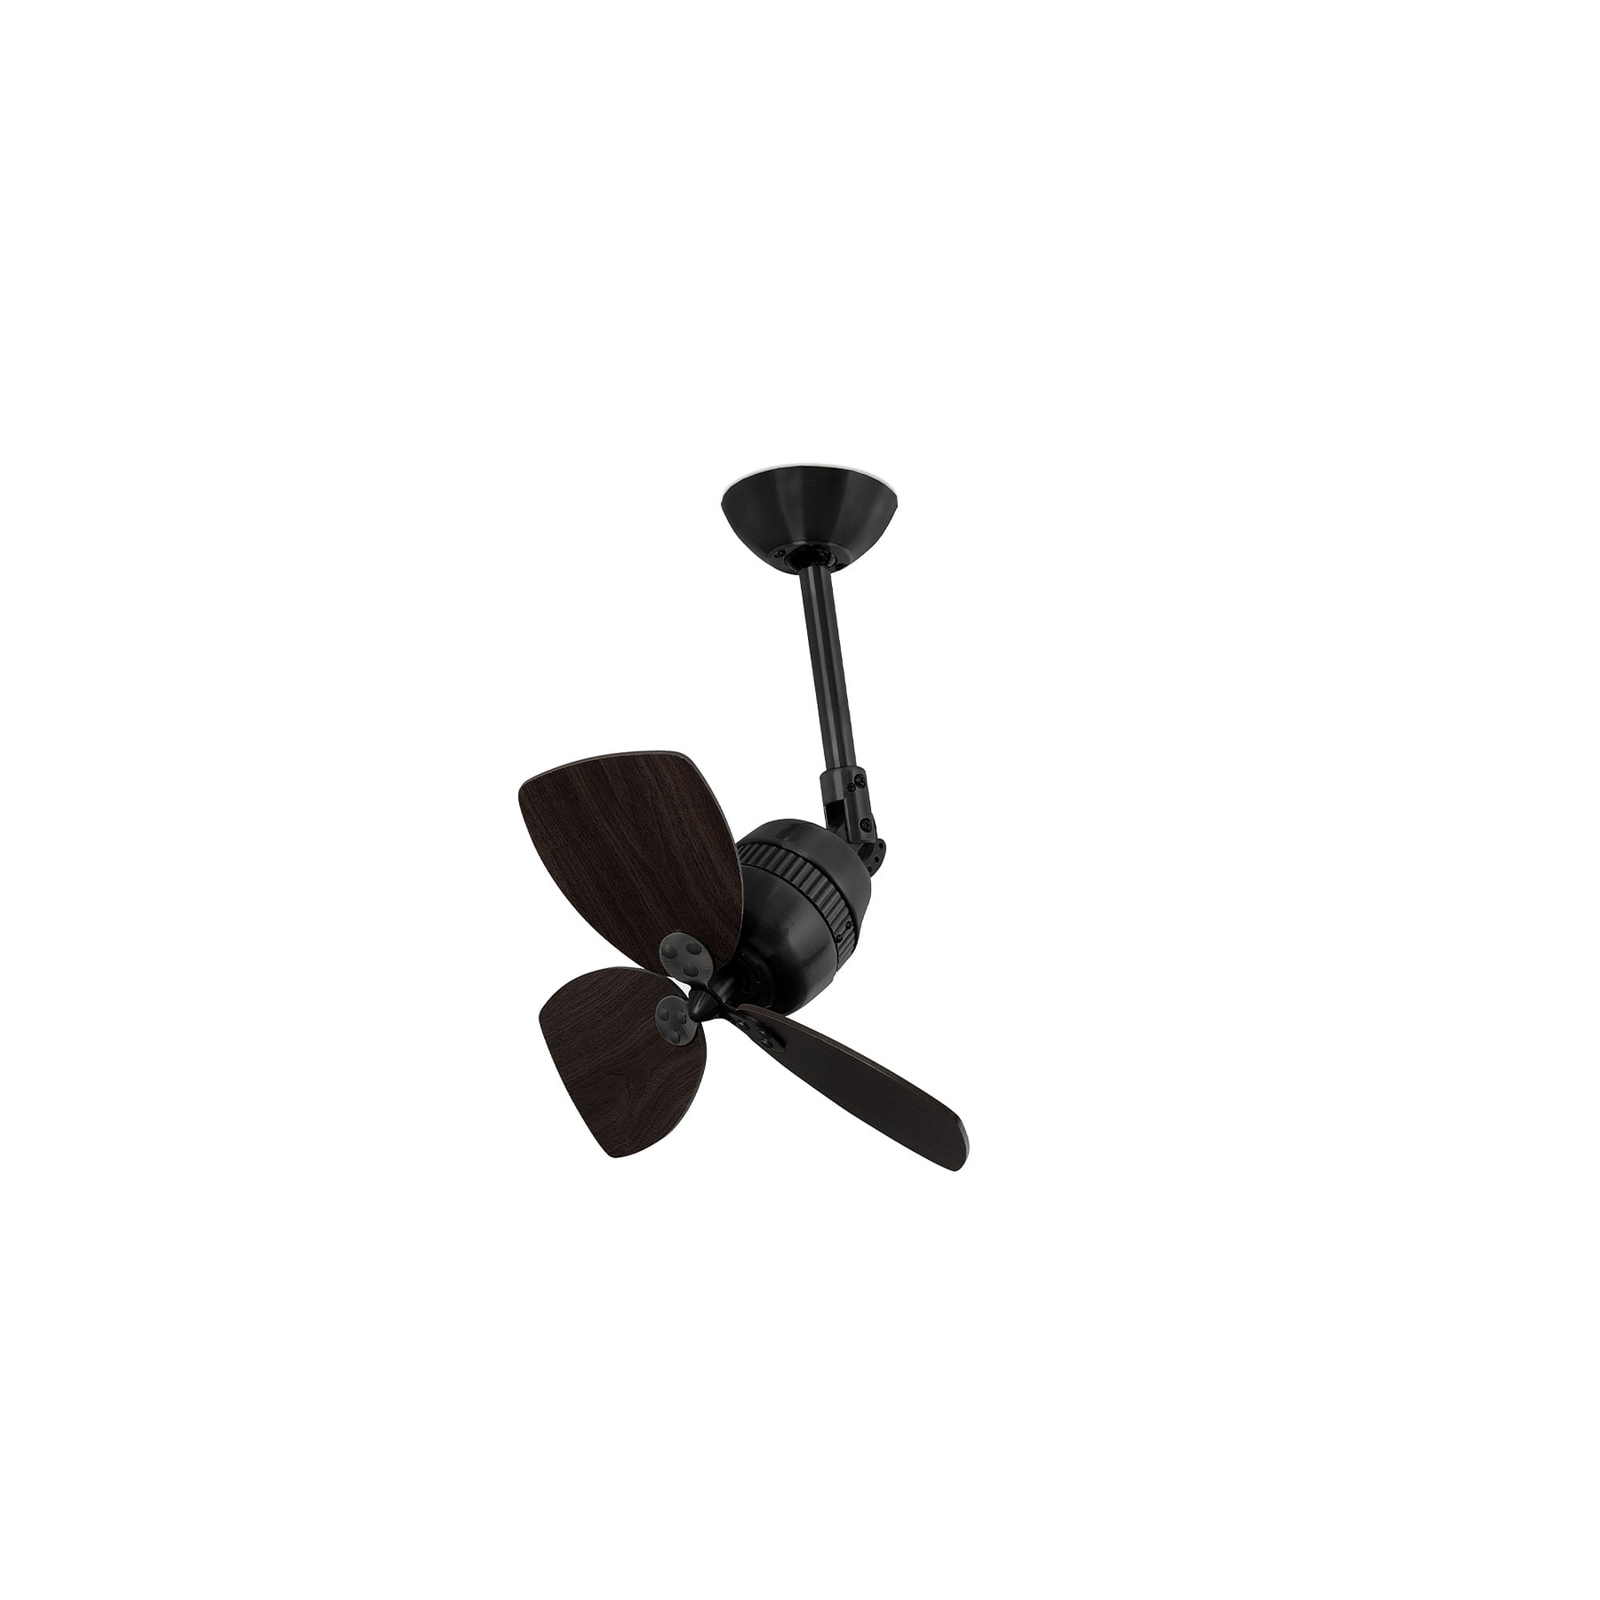 Vedra ceiling fan, black/walnut